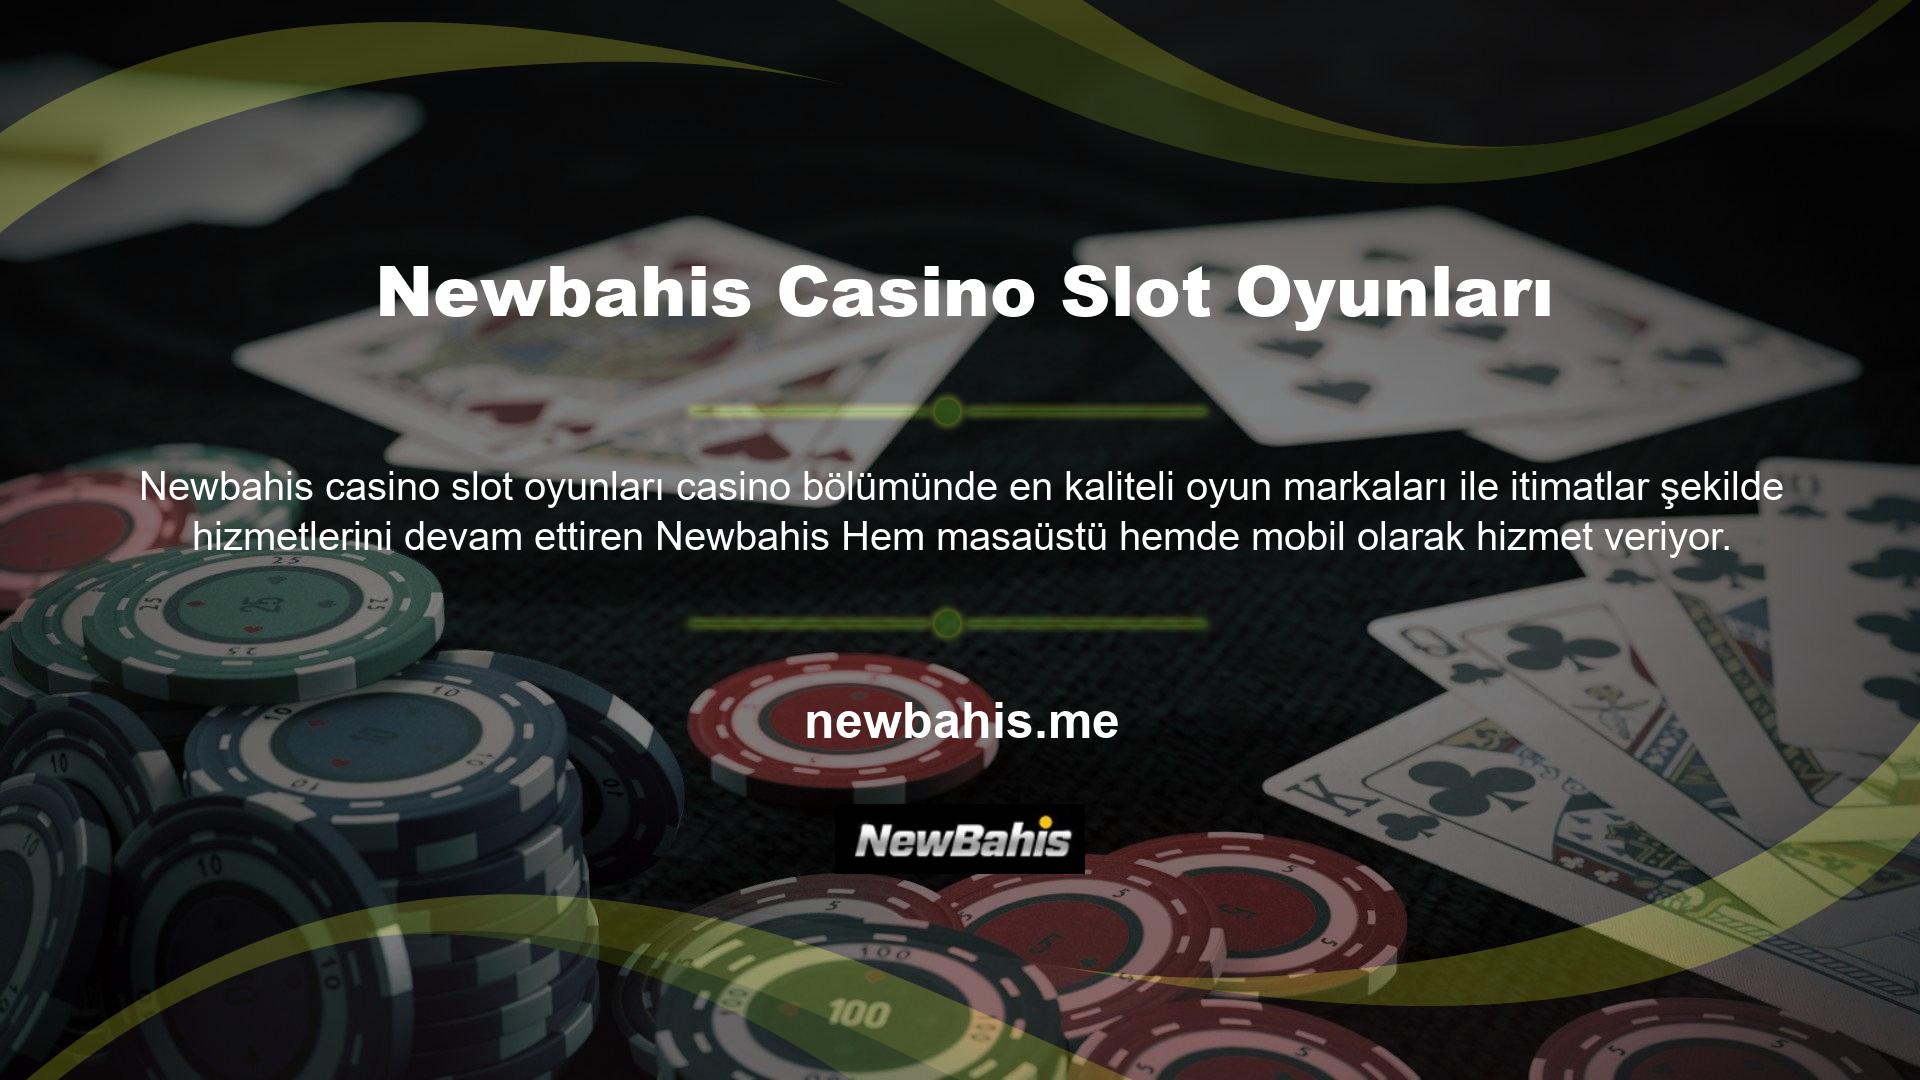 Newbahis Casino Slot Oyunları en kazançlı slot oyunlarını bünyesine katarak casino tutkunlarının olmazsa olmazı bir platform olmayı başarmıştır